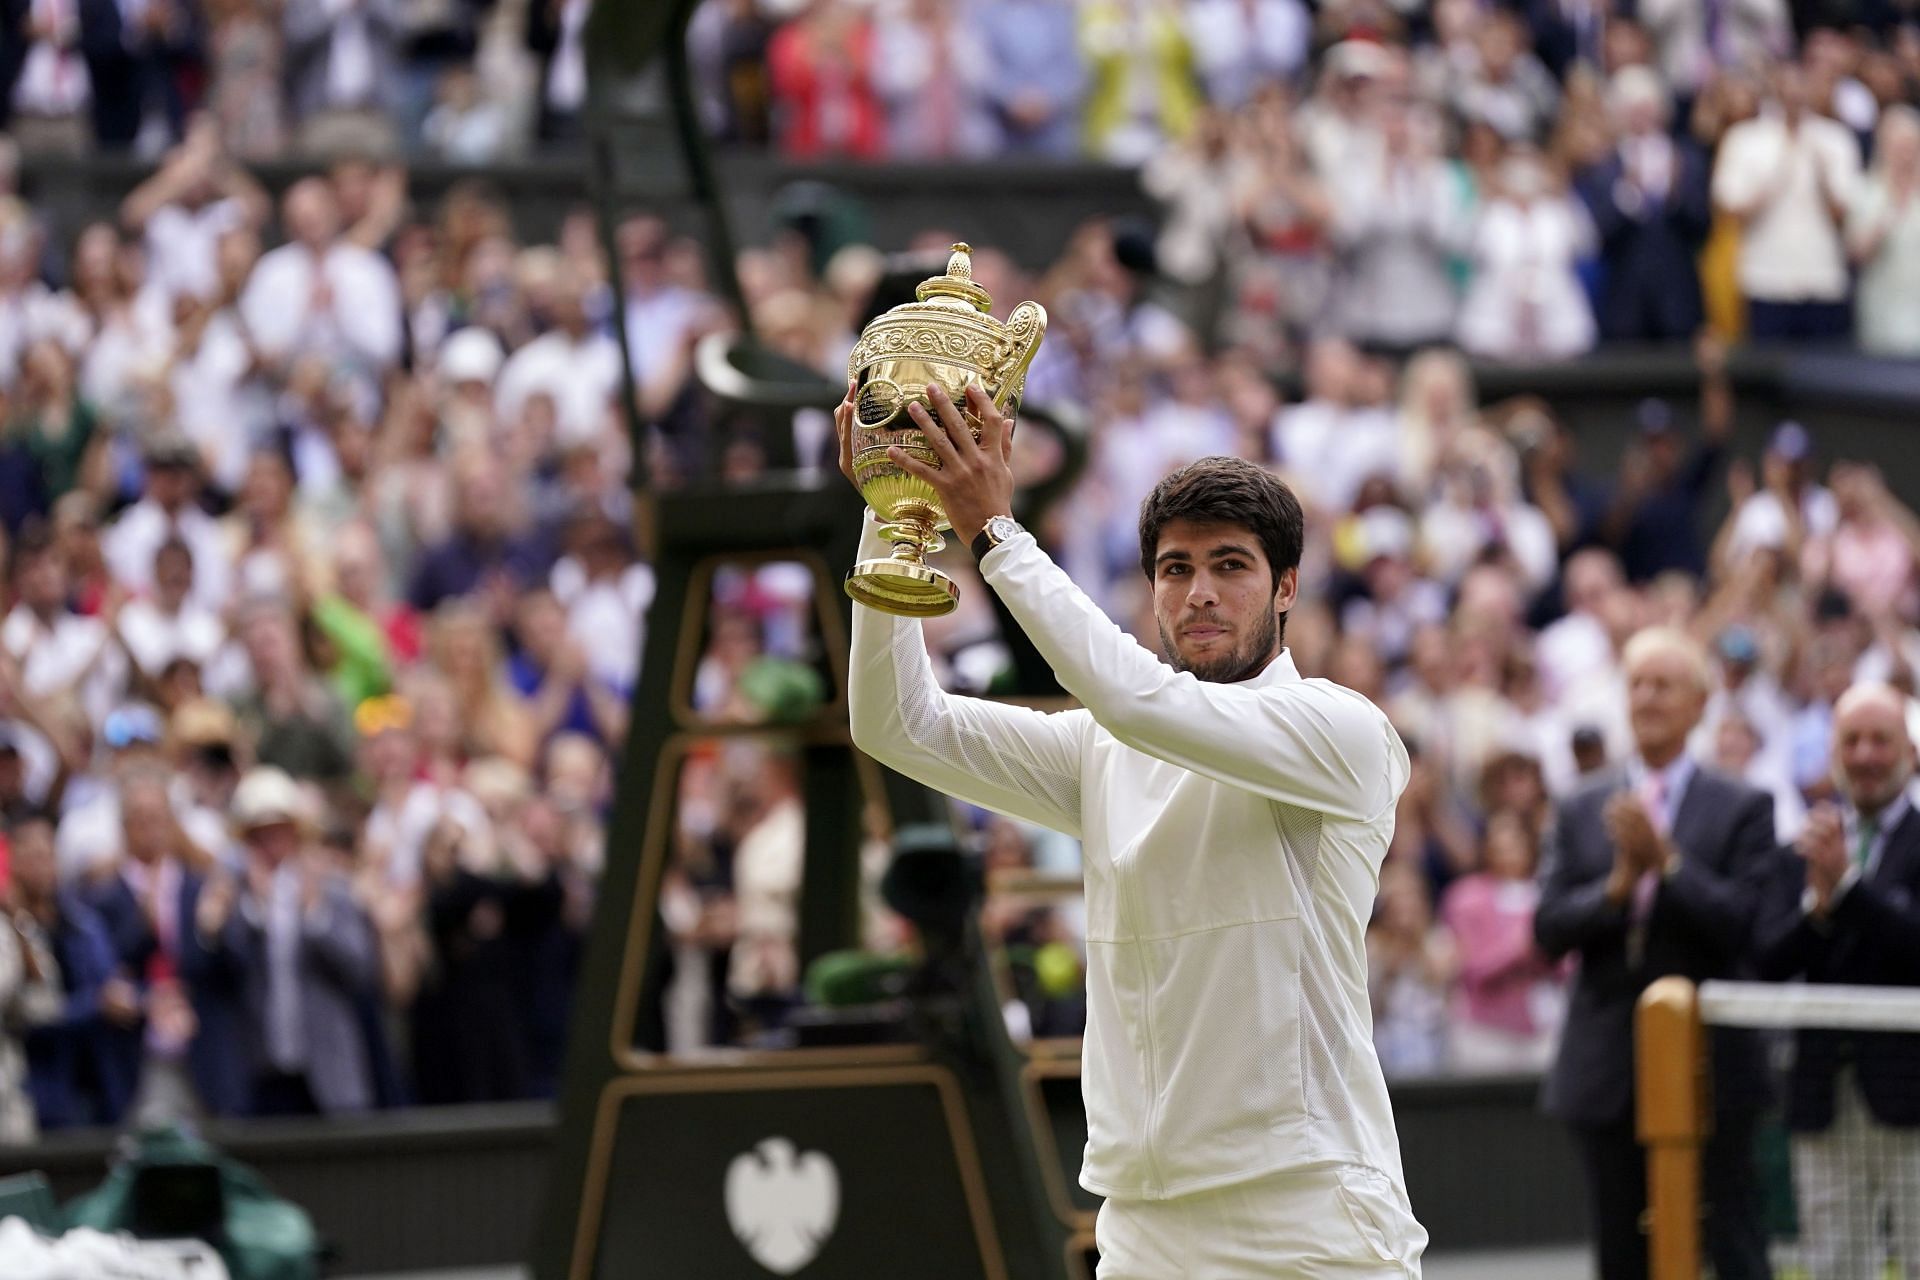 Alcaraz at the 2023 Wimbledon.